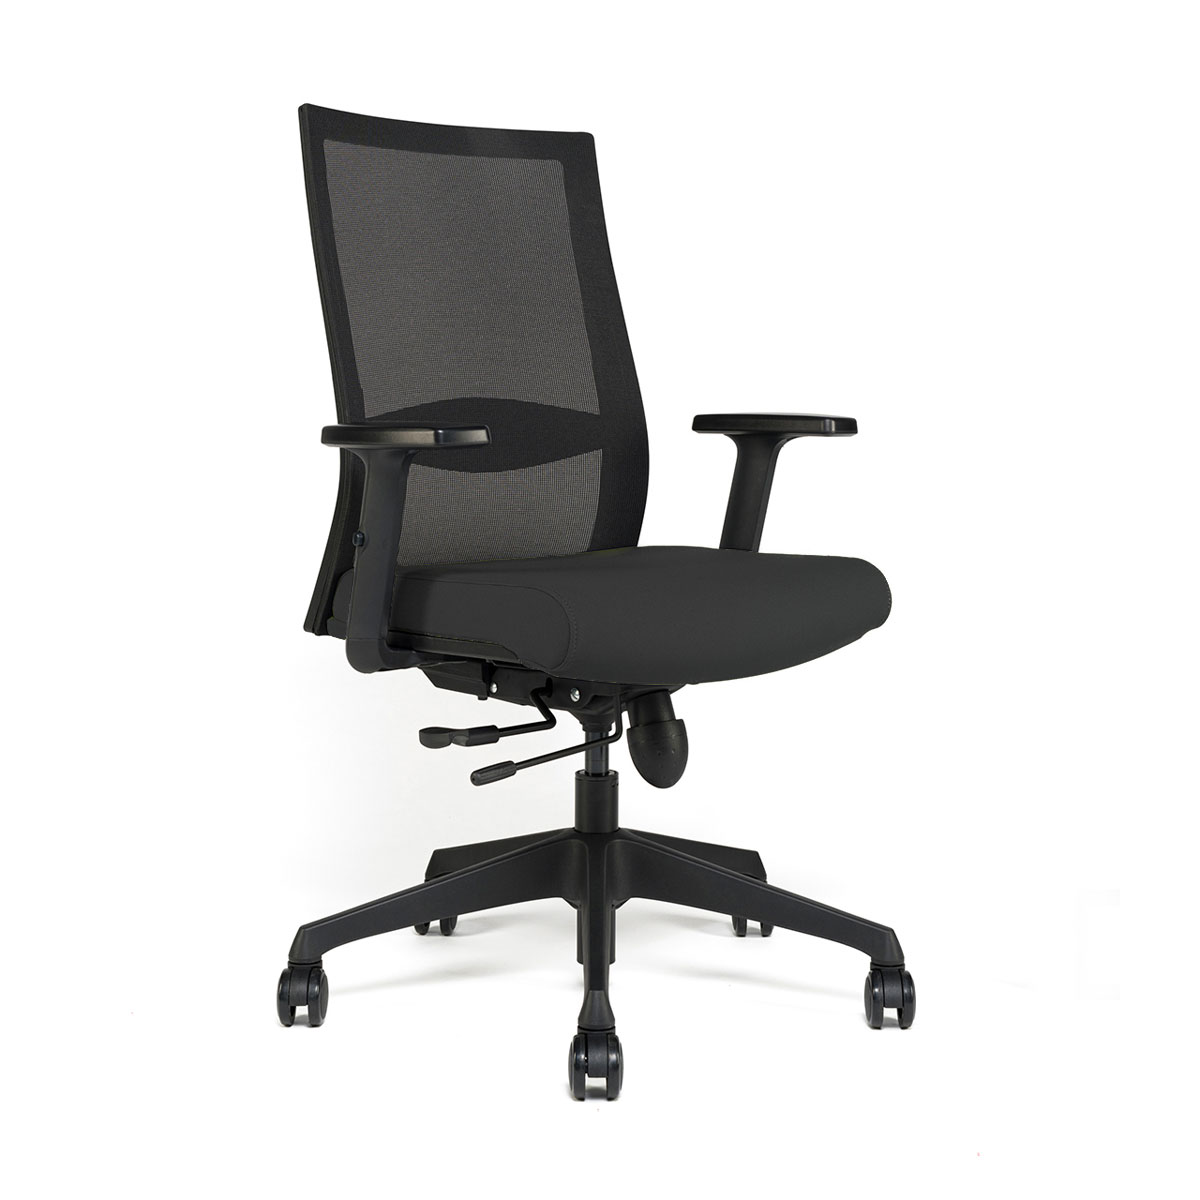 Chaise de Bureau Ergonomique - Chaise de Bureau Économique- Chaise